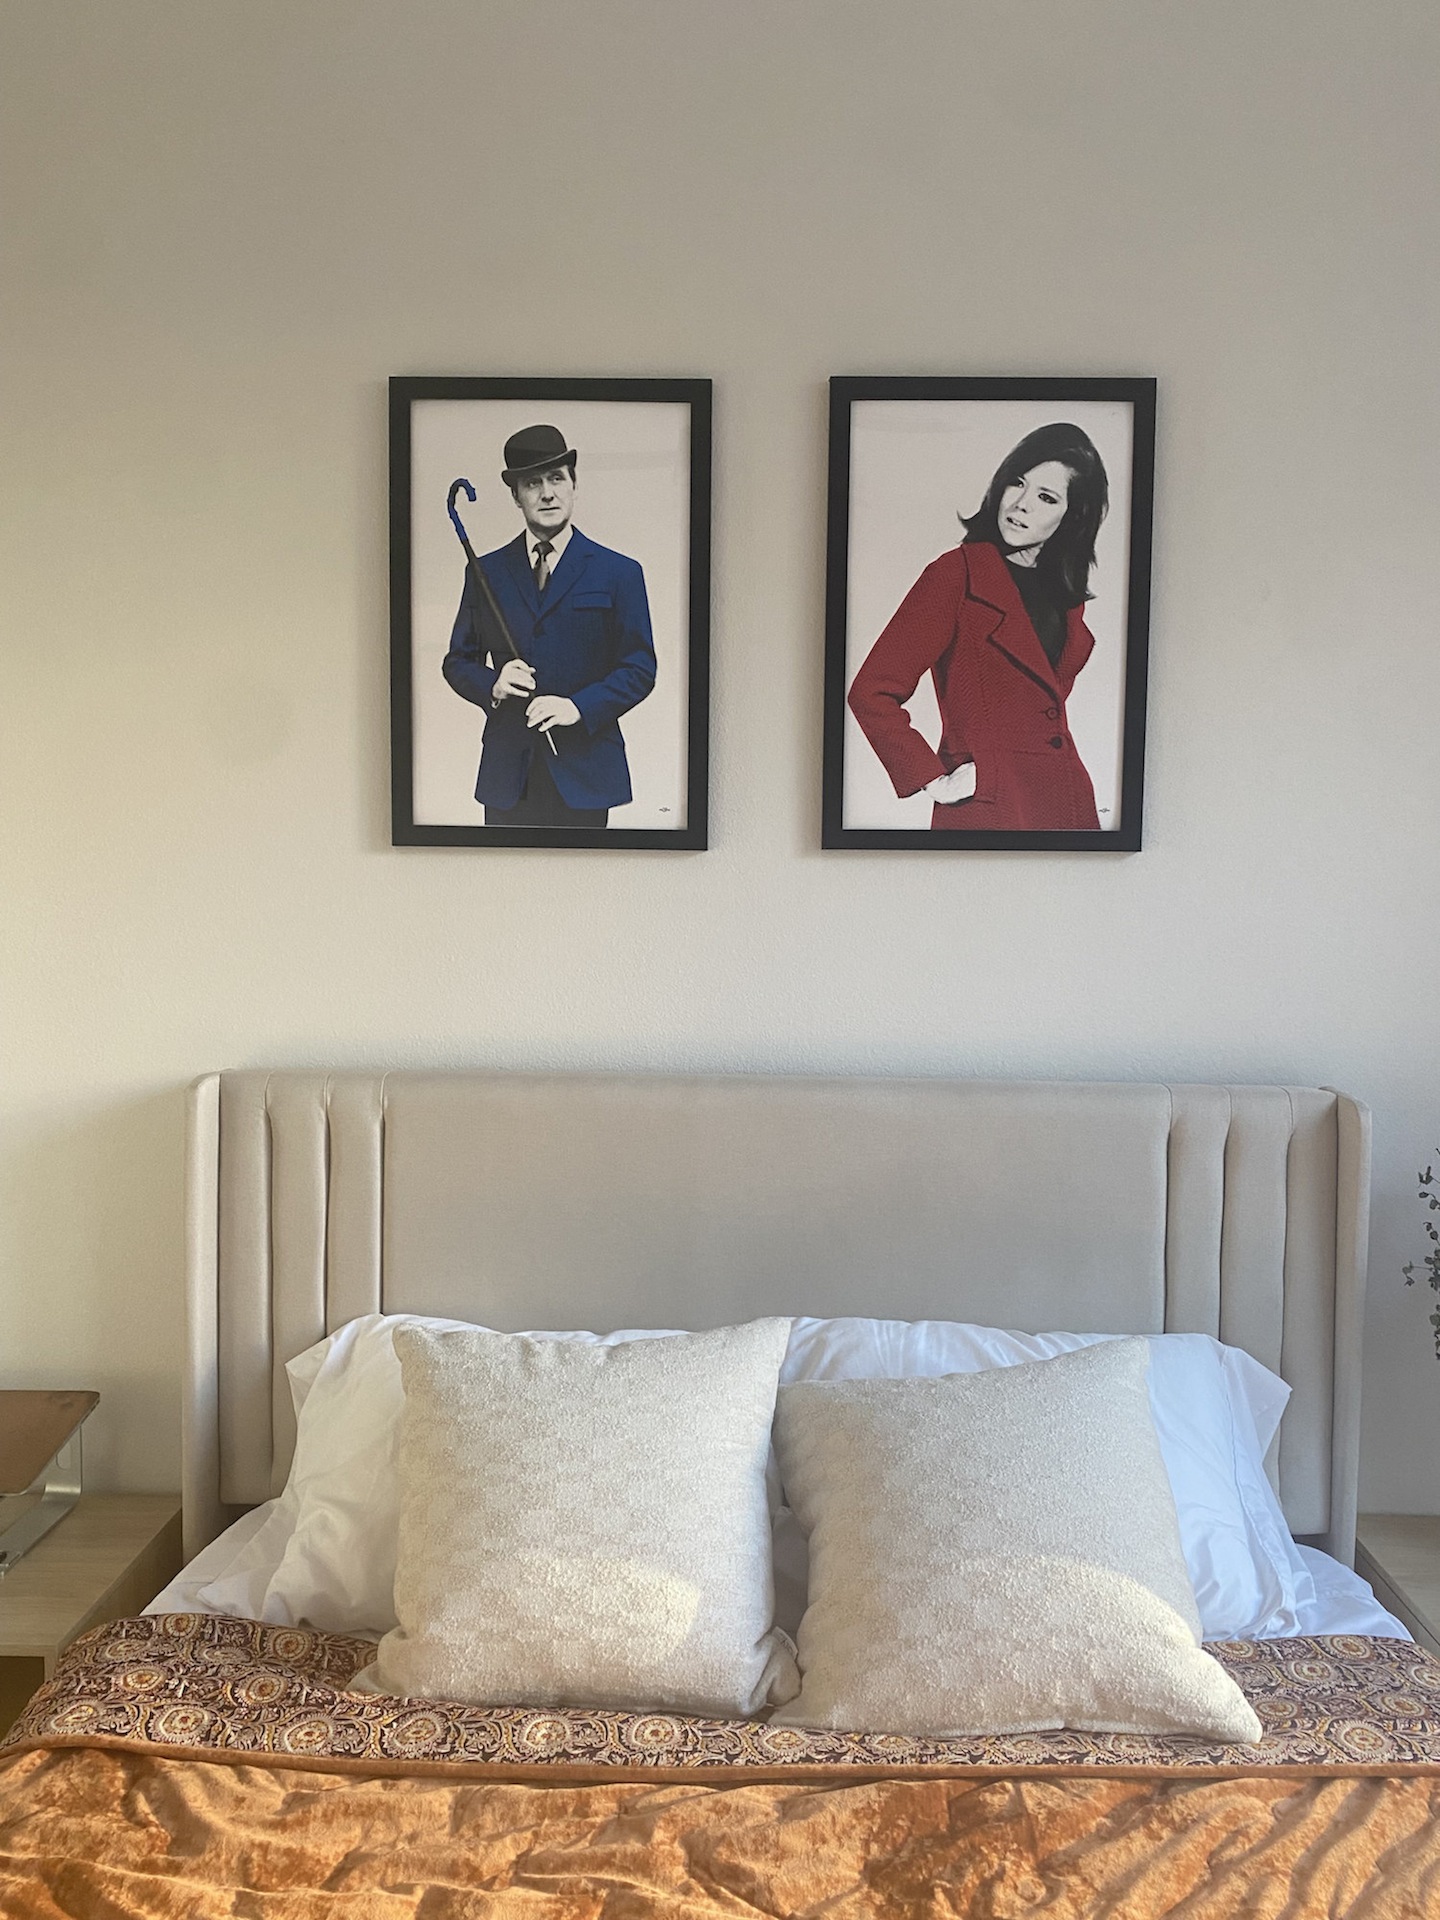 Steed & Emma Peel pop art prints